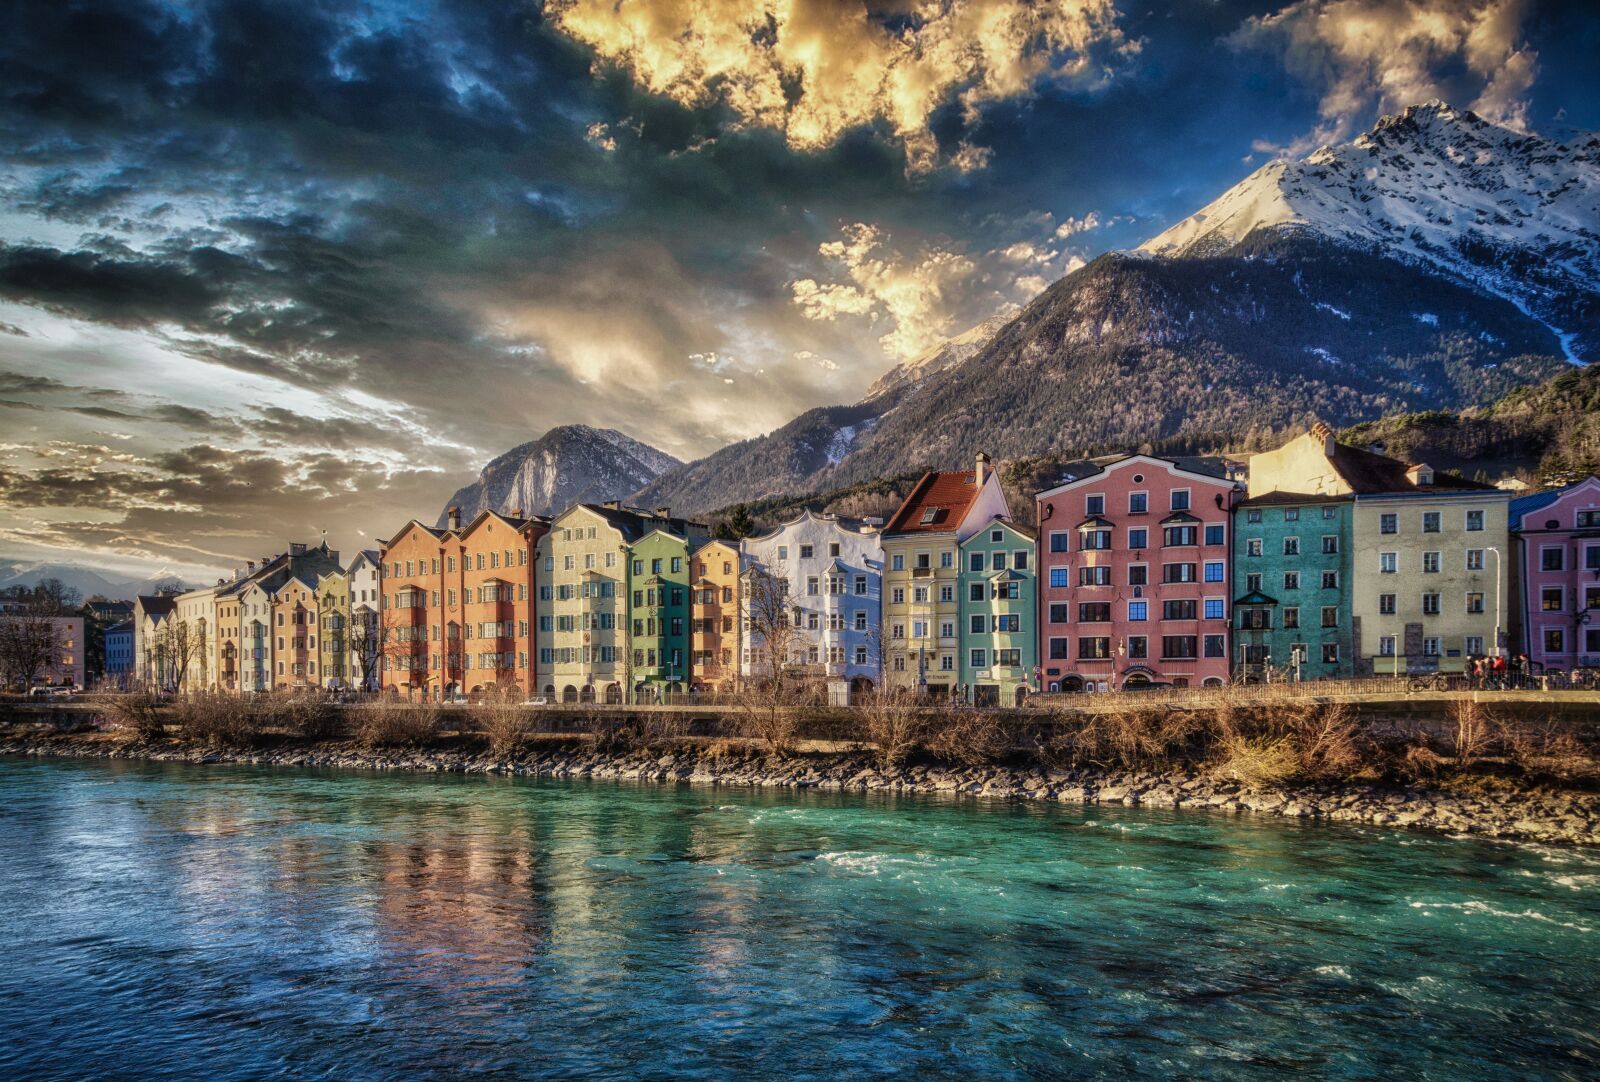 Sony a5100 sample photo. Innsbruck, tyrol, austria photography